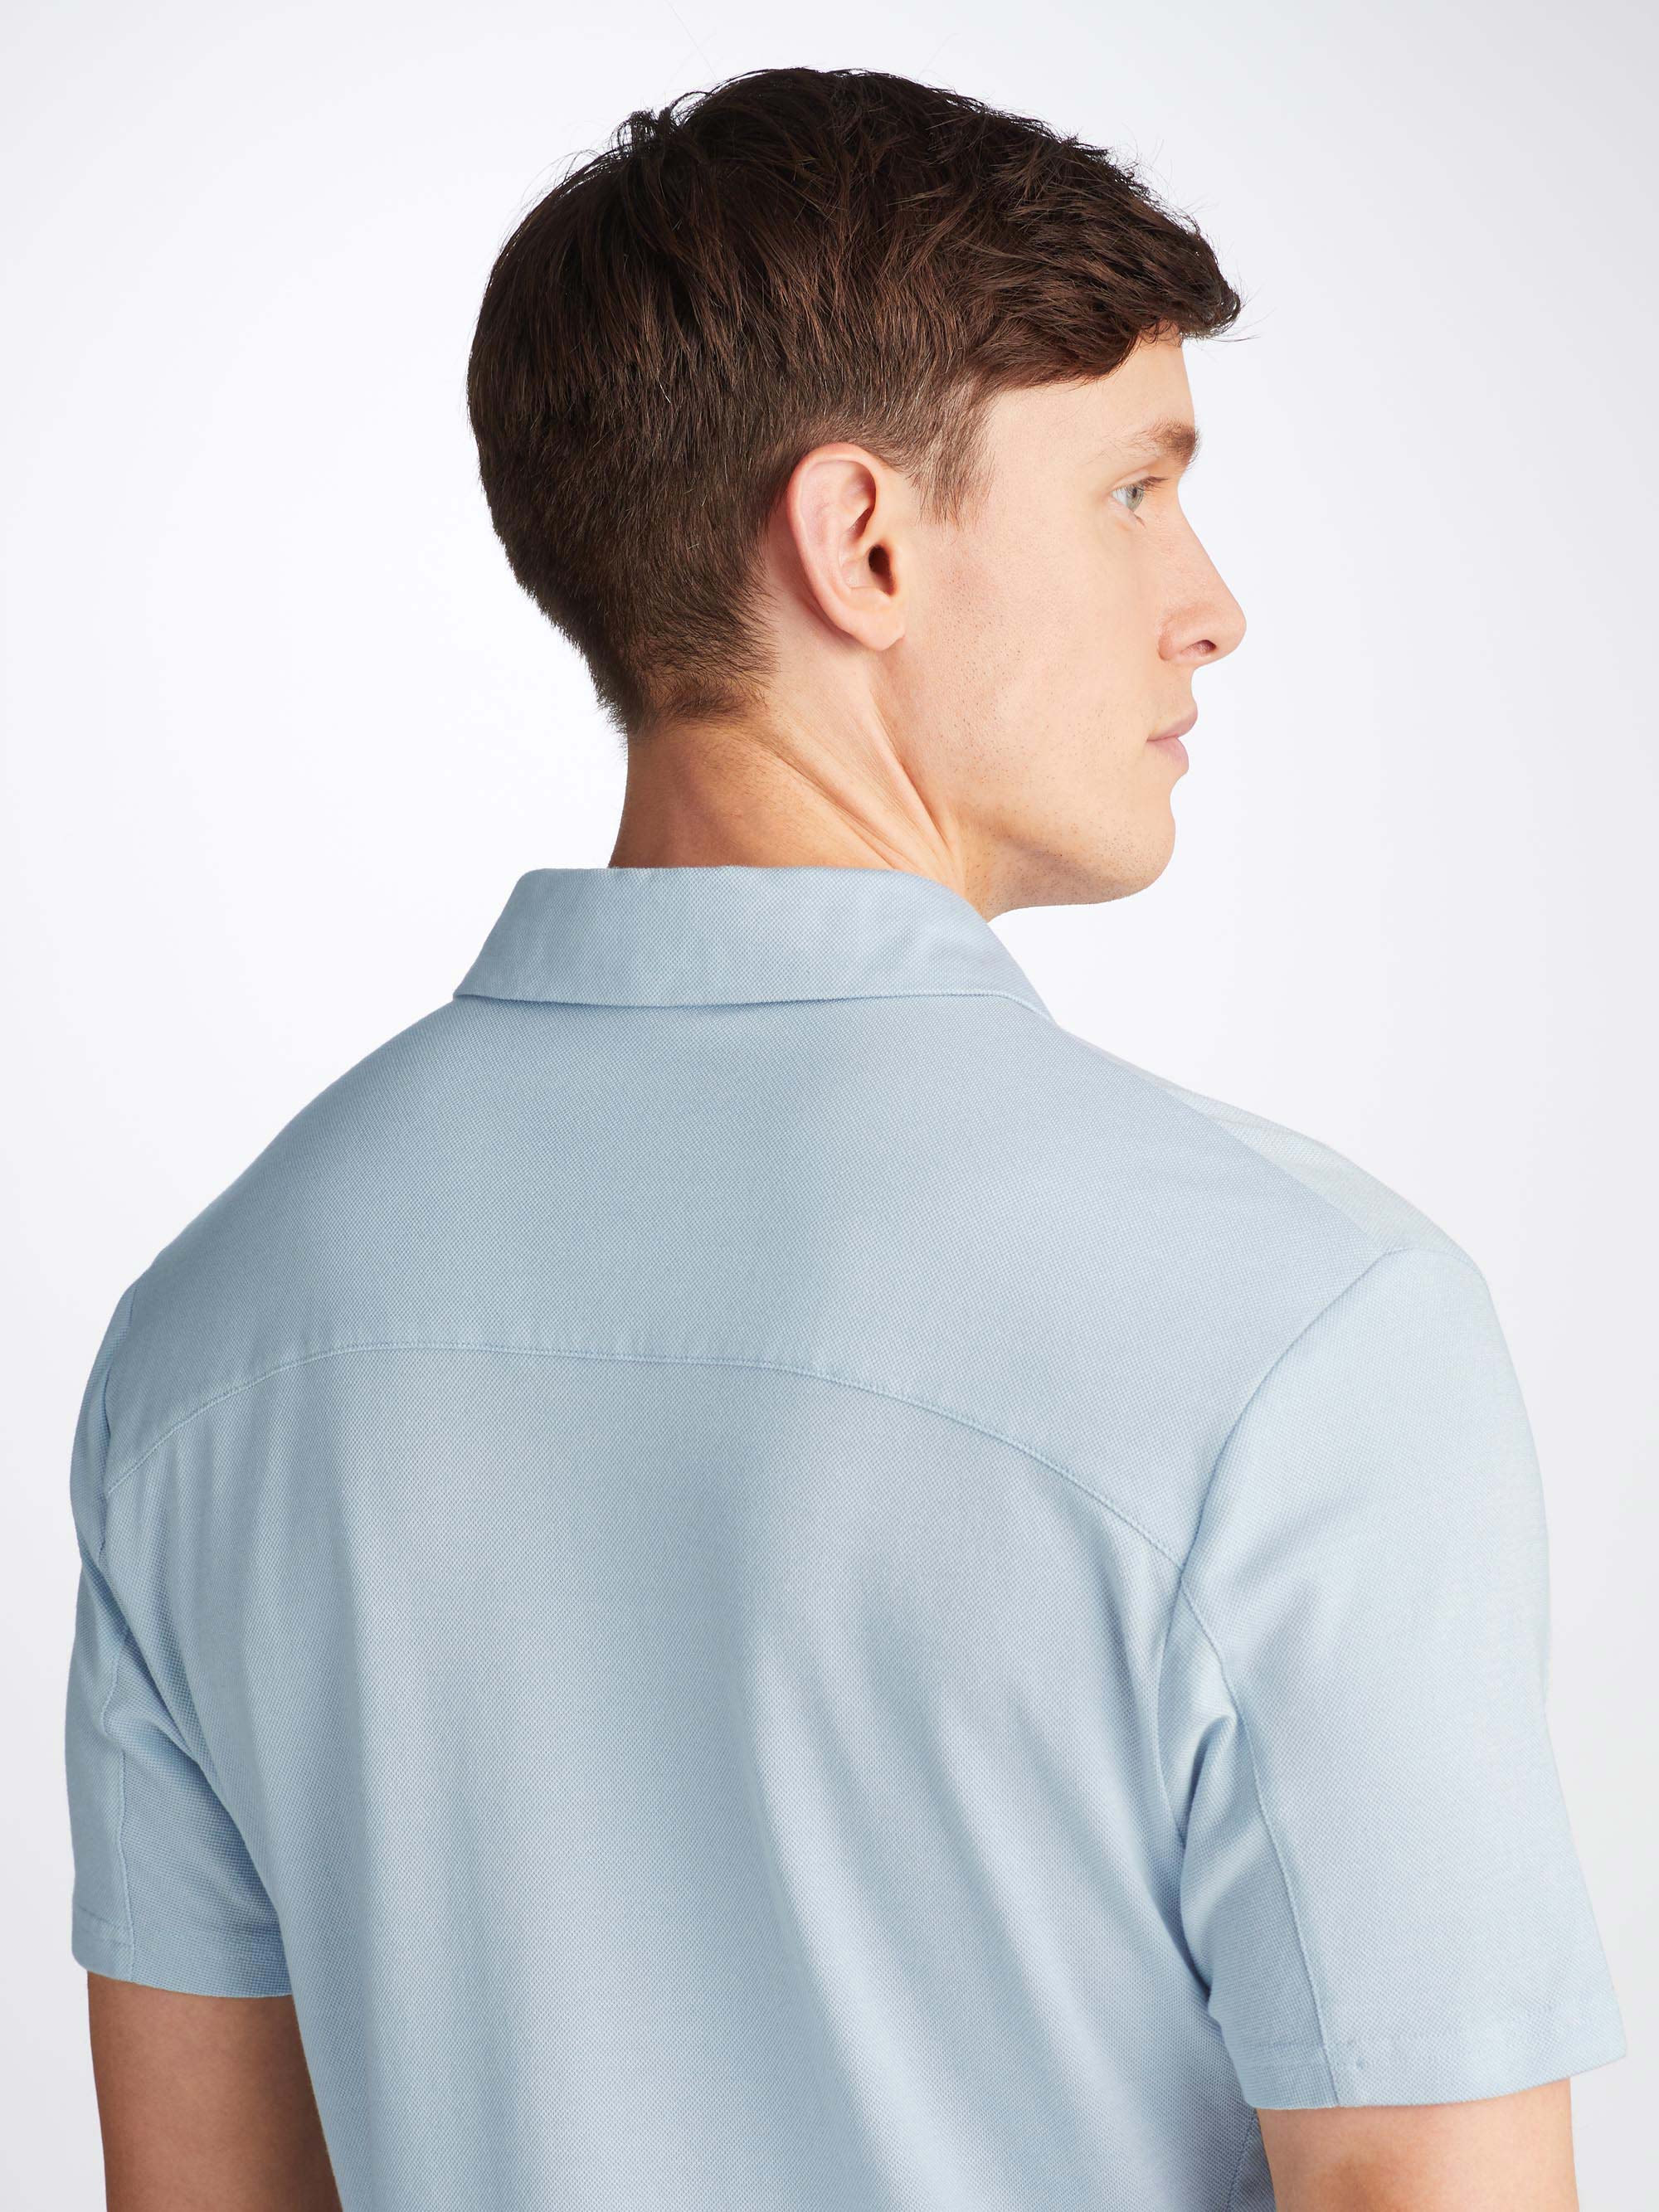 Men's Polo Shirt Ramsay 2 Pique Cotton Tencel Sky